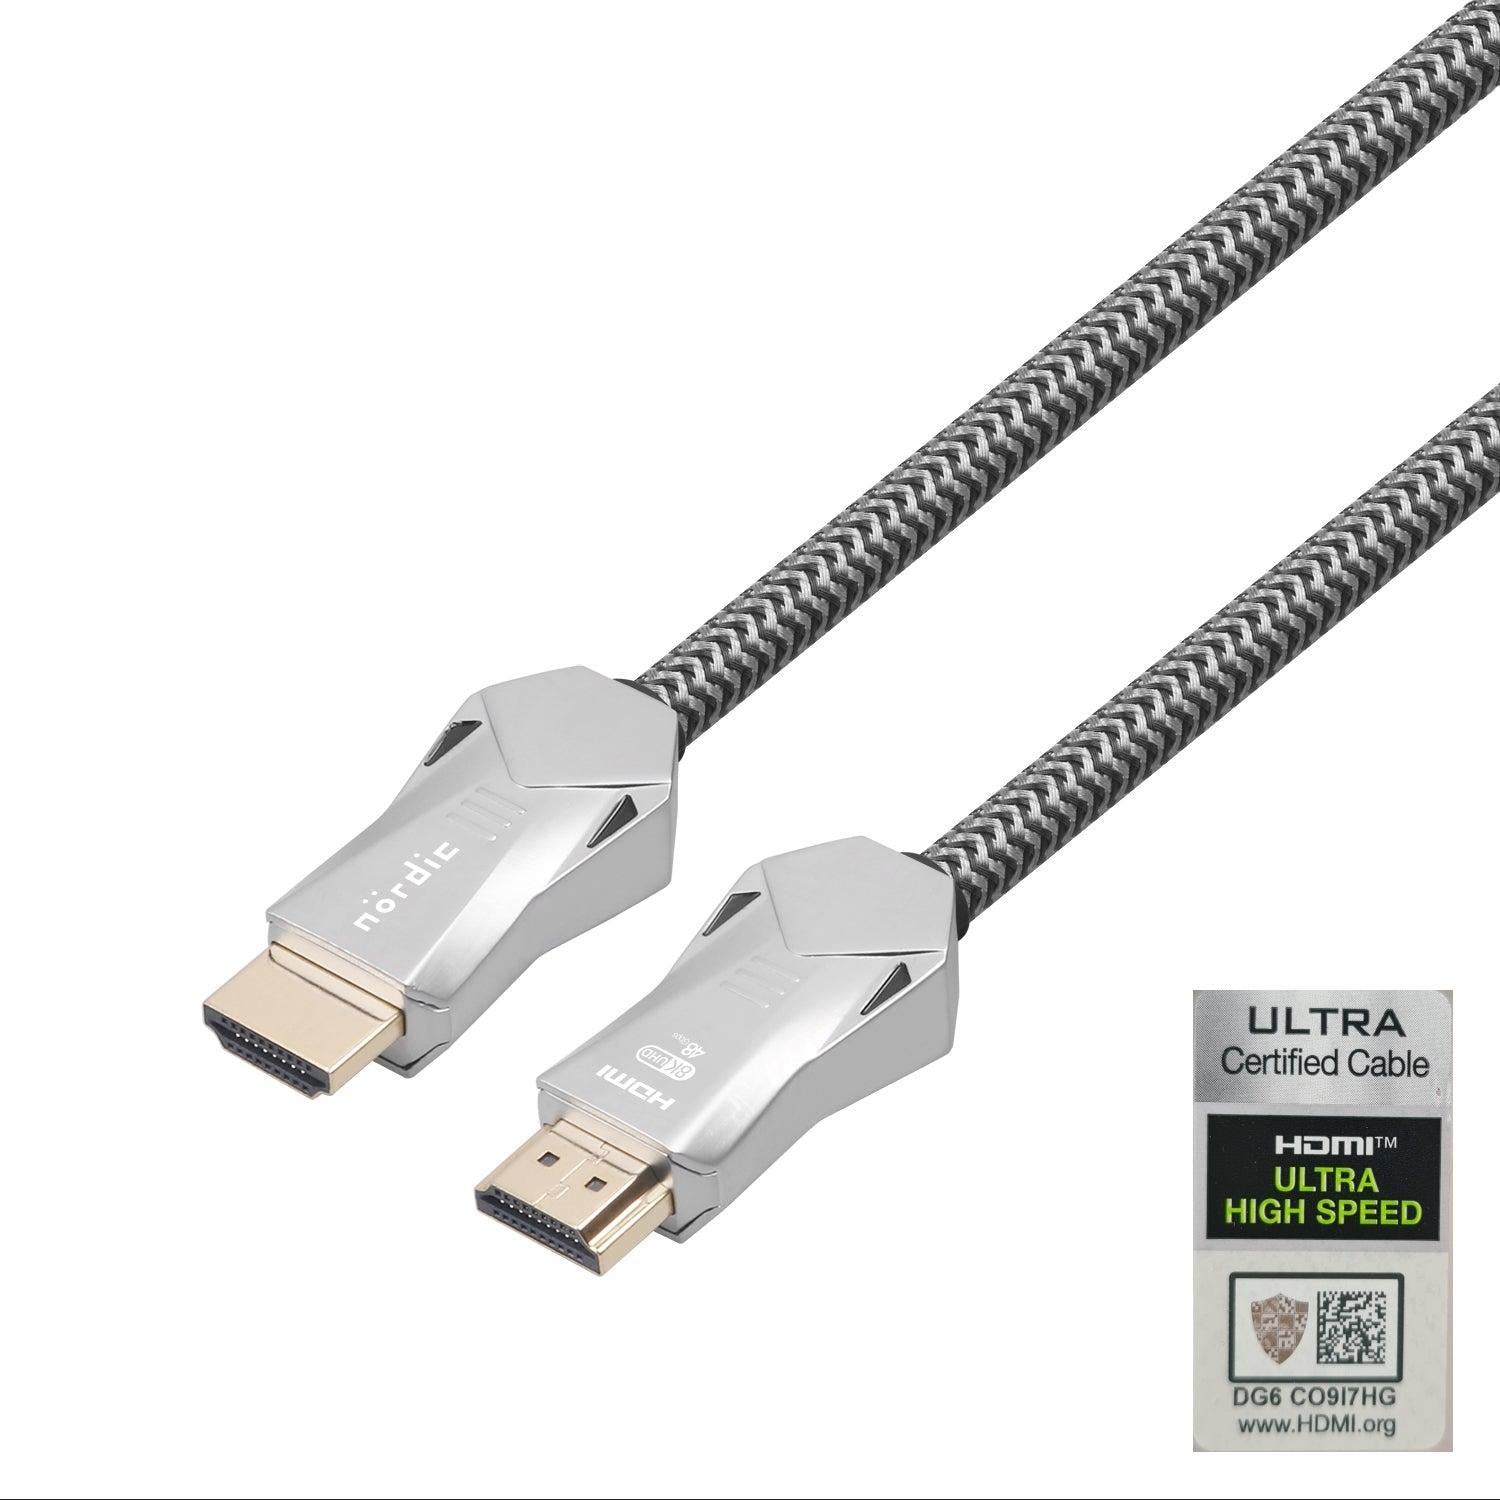 NORDIC CERTIFICEREDE KABLER 3m Ultra High Speed HDMI 2.1 8K 60Hz 4K 120Hz 48Gbps Dynamic HDR eARC VRR Nylon flettet kabel forgyldt